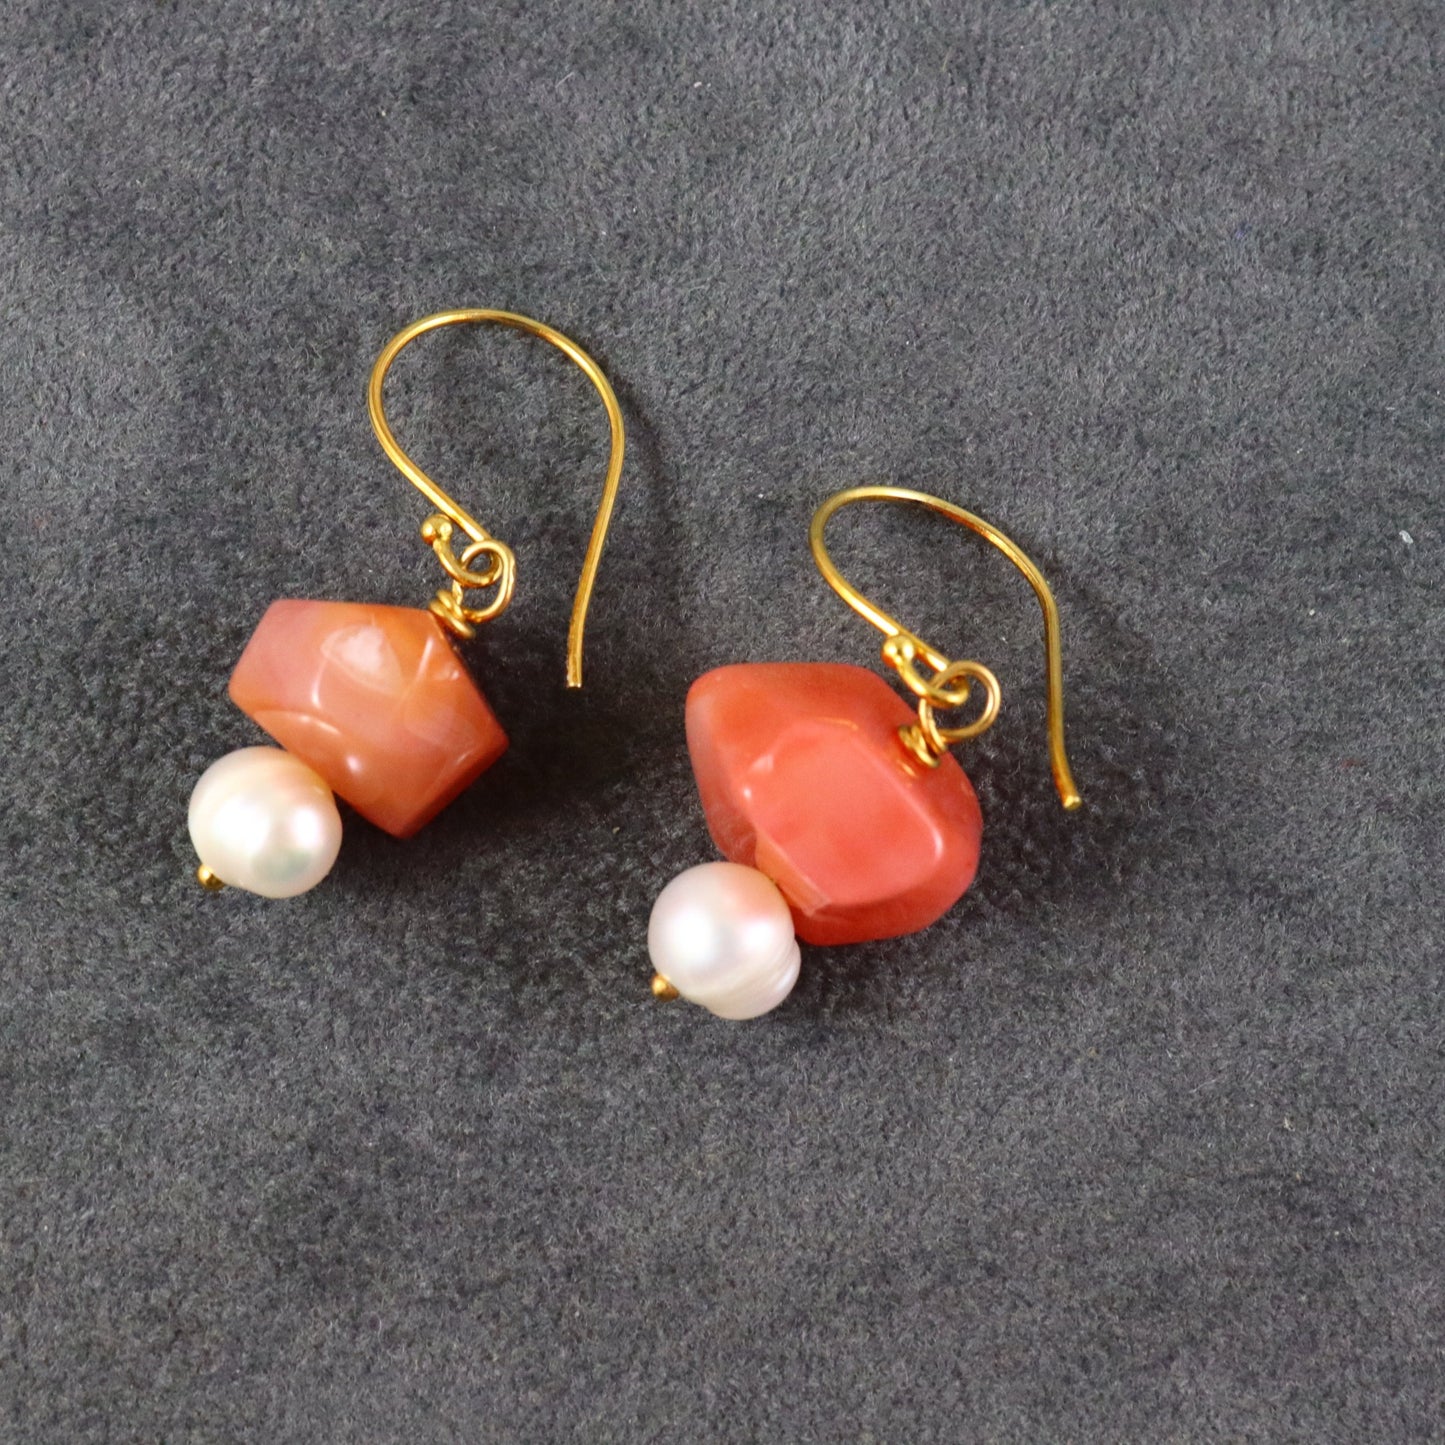 Carnelian & Pearl Earrings - Karen Morrison Jewellery